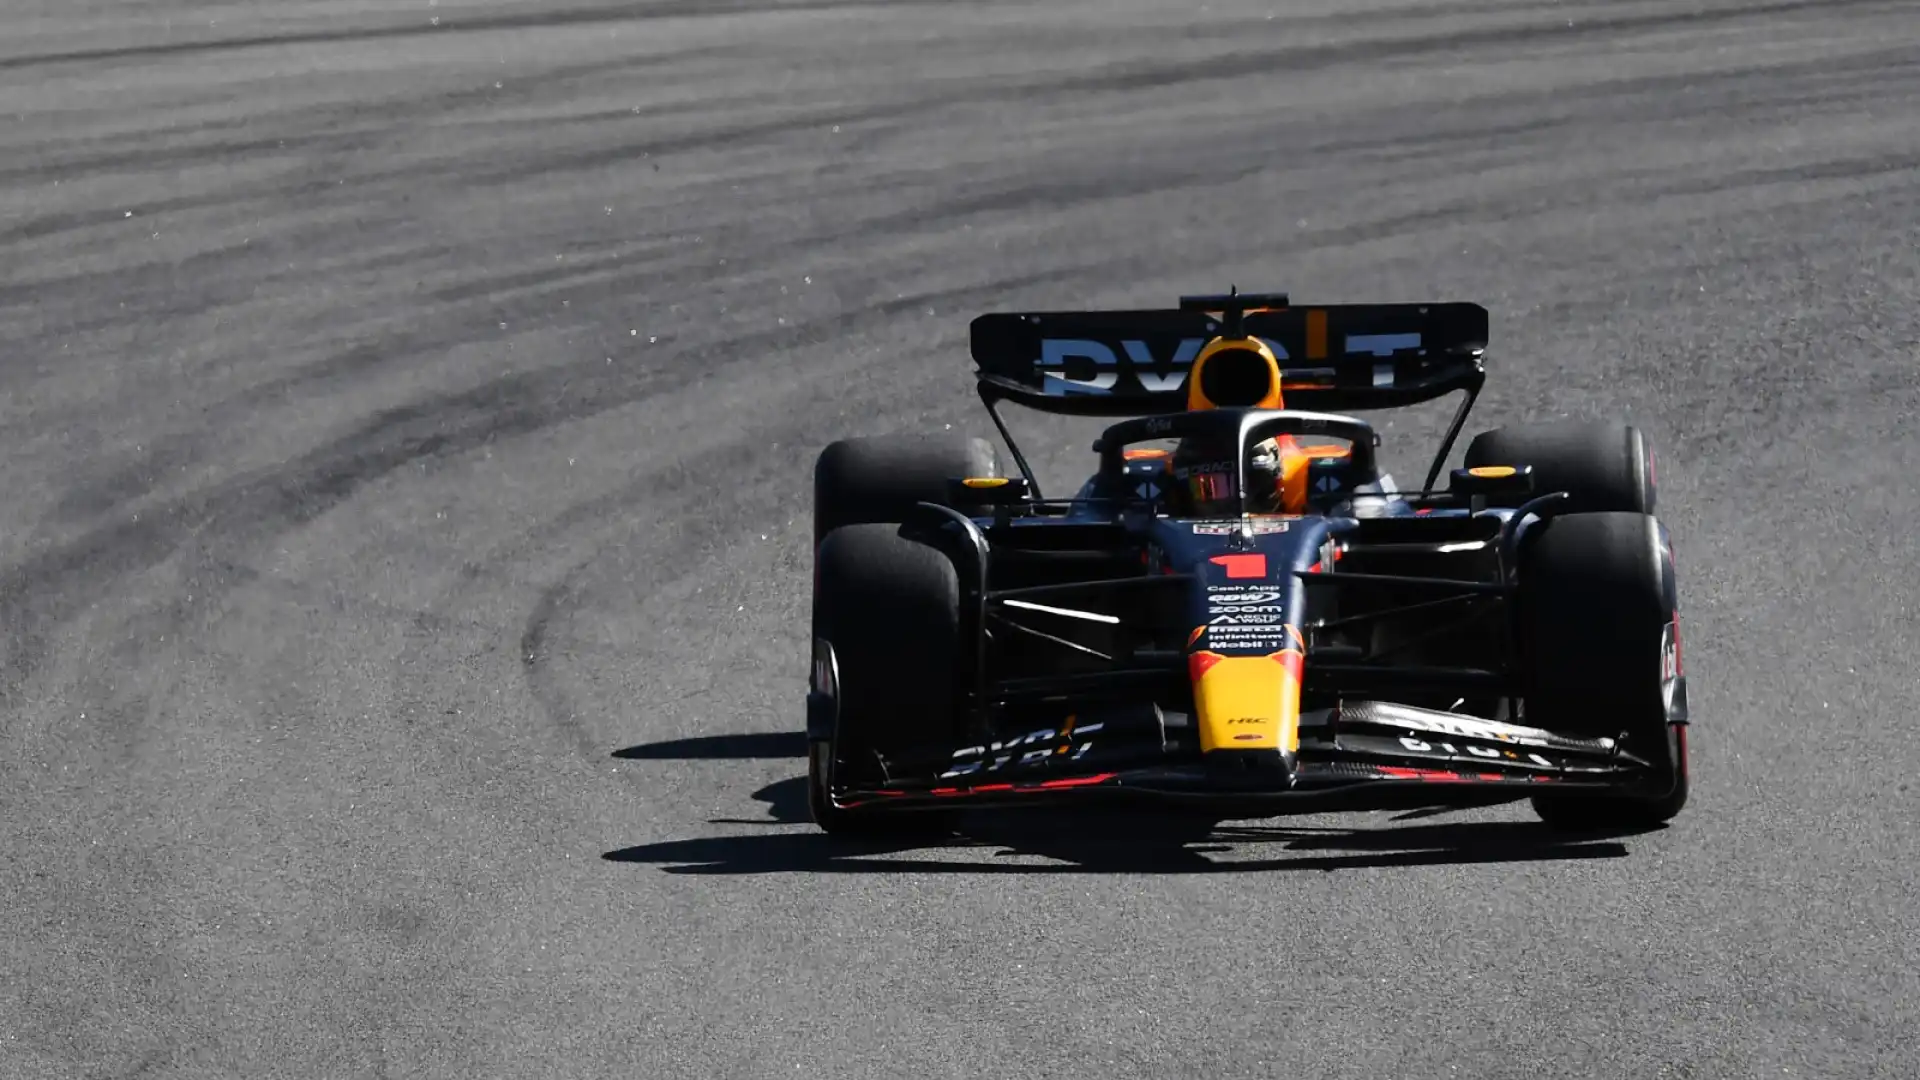 F1, Max Verstappen vince anche in Brasile. Podio in volata per Alonso, Sainz 6°